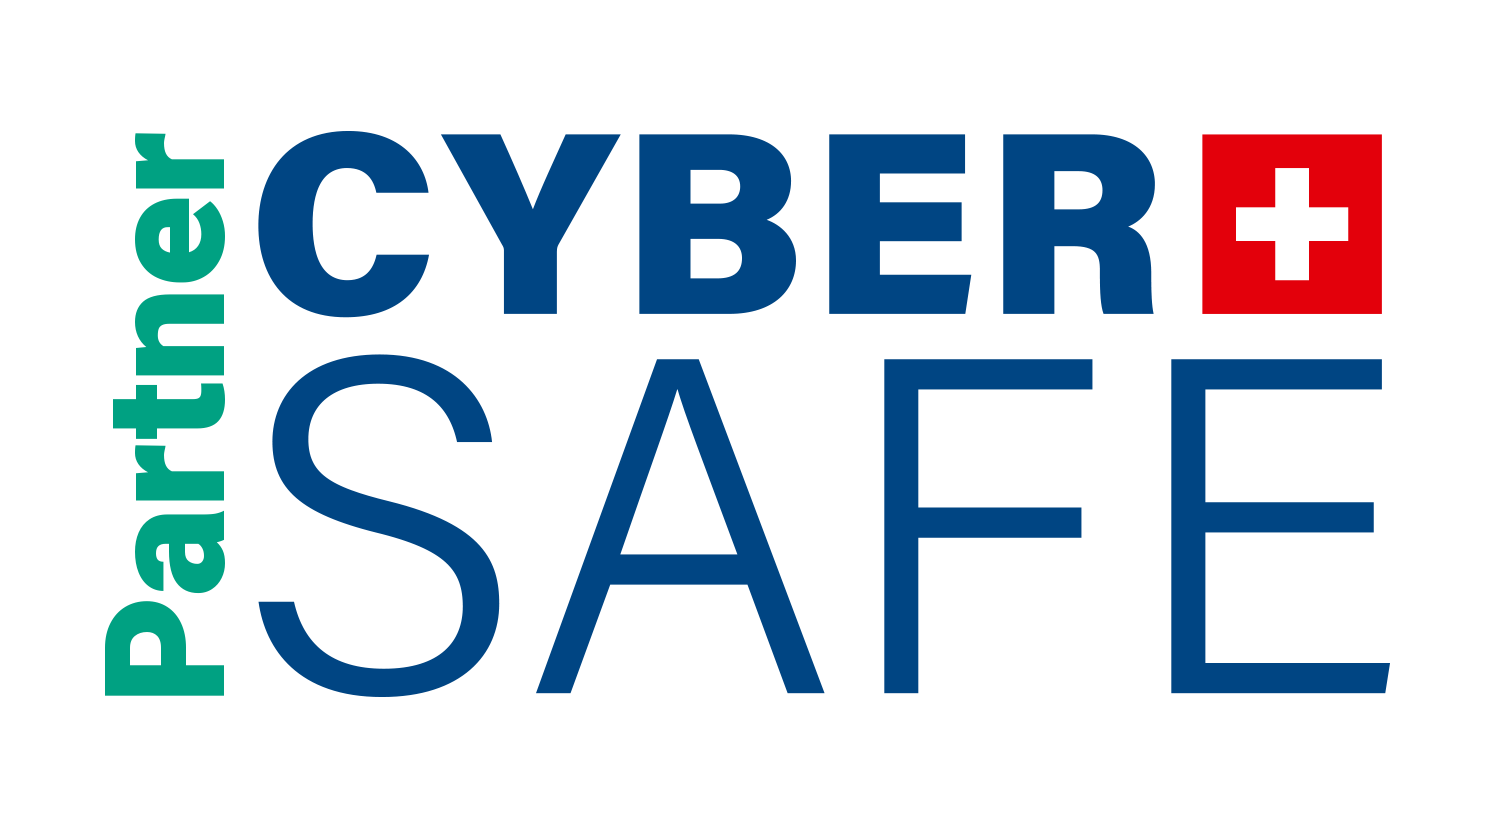 L’association Suisse pour le Label de Cybersécurité a développé le Label cyber-safe.ch pour permettre aux PME, communes et autres administrations d’atteindre un niveau de sécurité informatique défini comme acceptable par un ensemble de partenaires publics et privés.